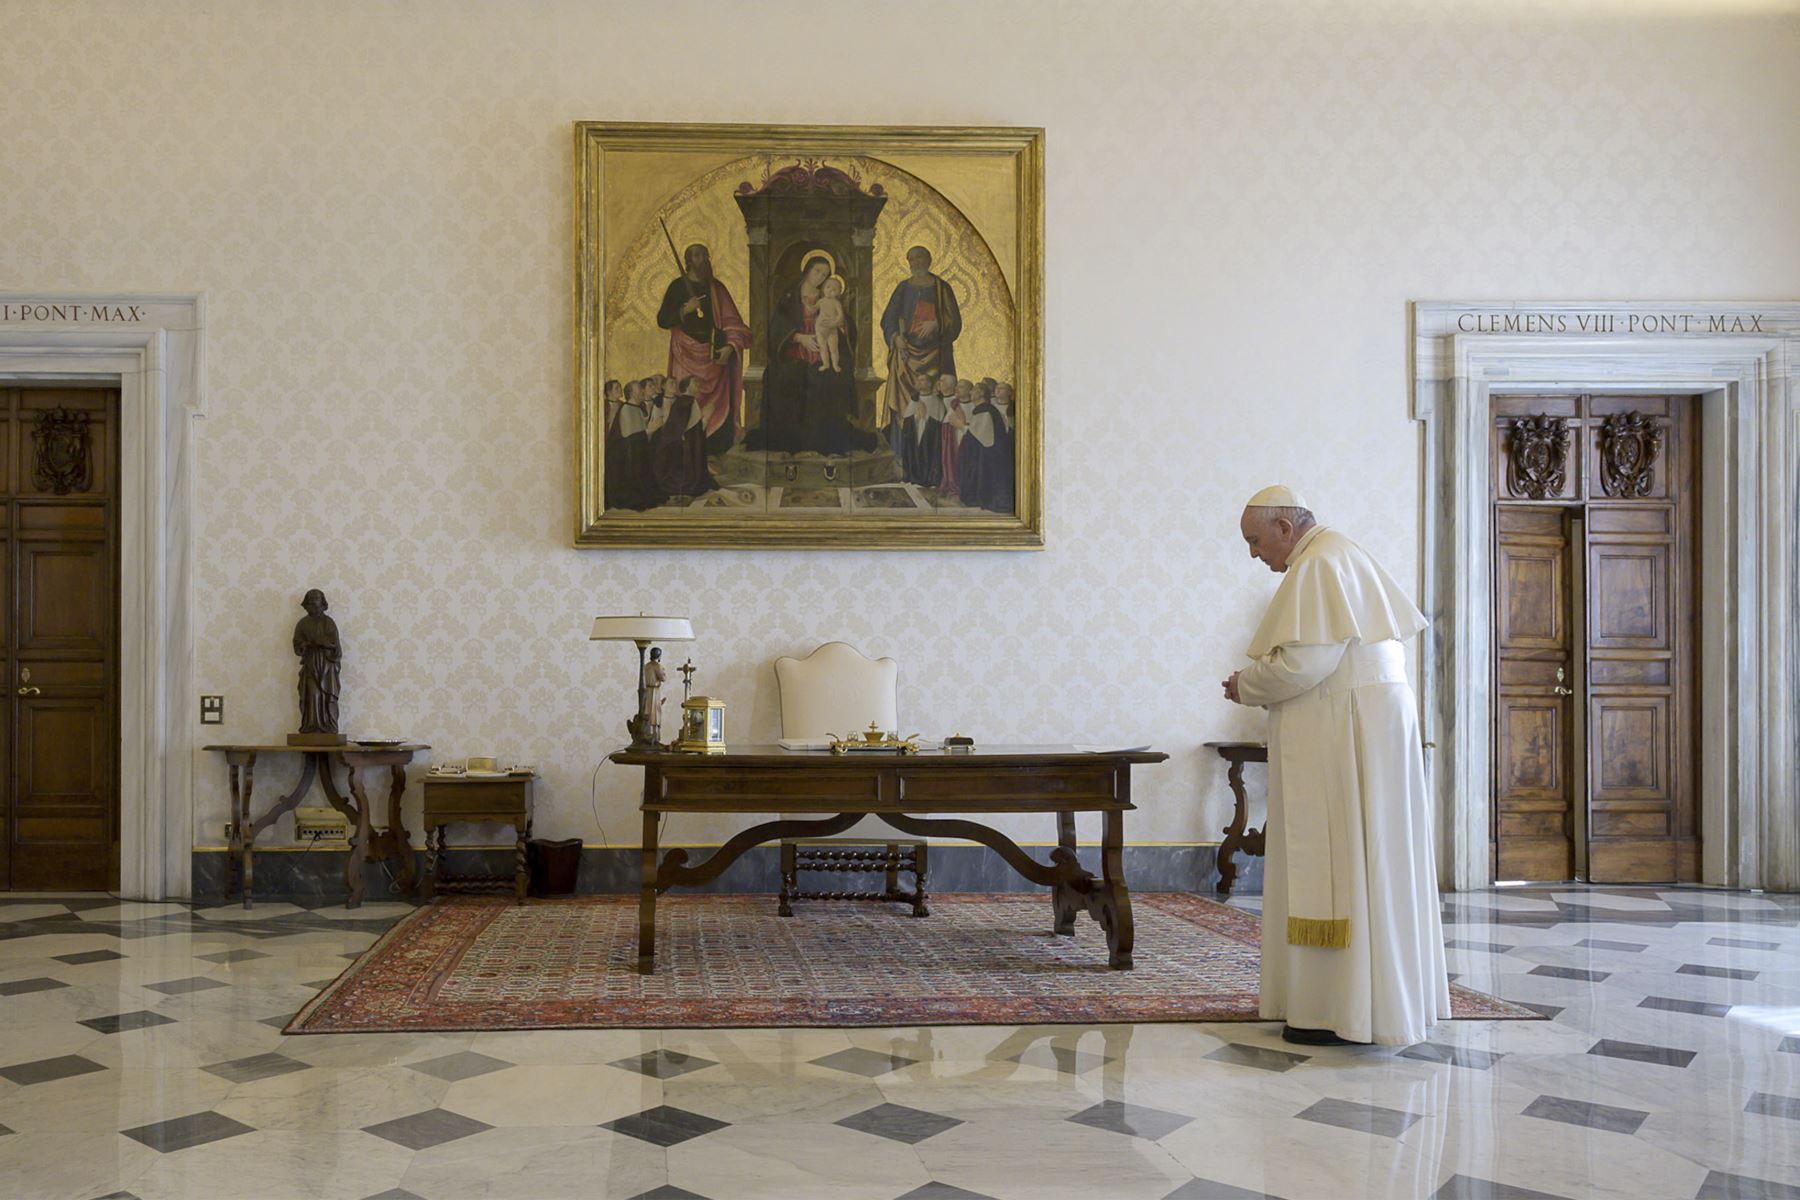 Papa Francisco recitando la oración "Padre Nuestro" durante una transmisión en vivo desde la biblioteca del palacio apostólico en el Vaticano durante el encierro luego de la nueva pandemia de coronavirus COVID-19. Foto: AFP